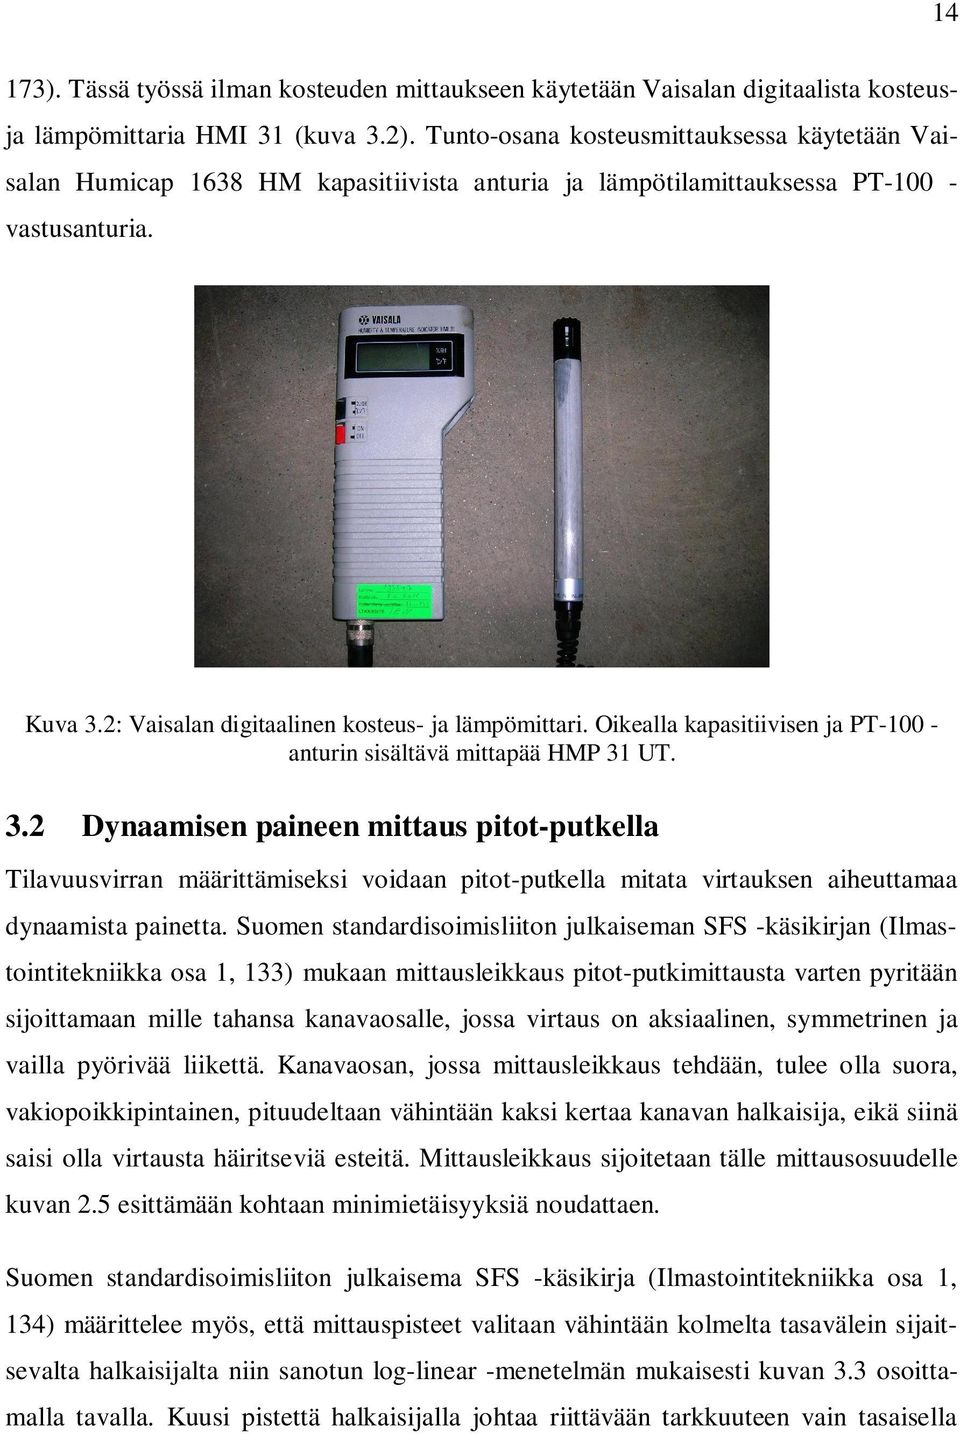 Suomen standardisoimisliiton julkaiseman SFS -käsikirjan (Ilmastointitekniikka osa 1, 133) mukaan mittausleikkaus pitot-putkimittausta varten pyritään sijoittamaan mille tahansa kanavaosalle, jossa